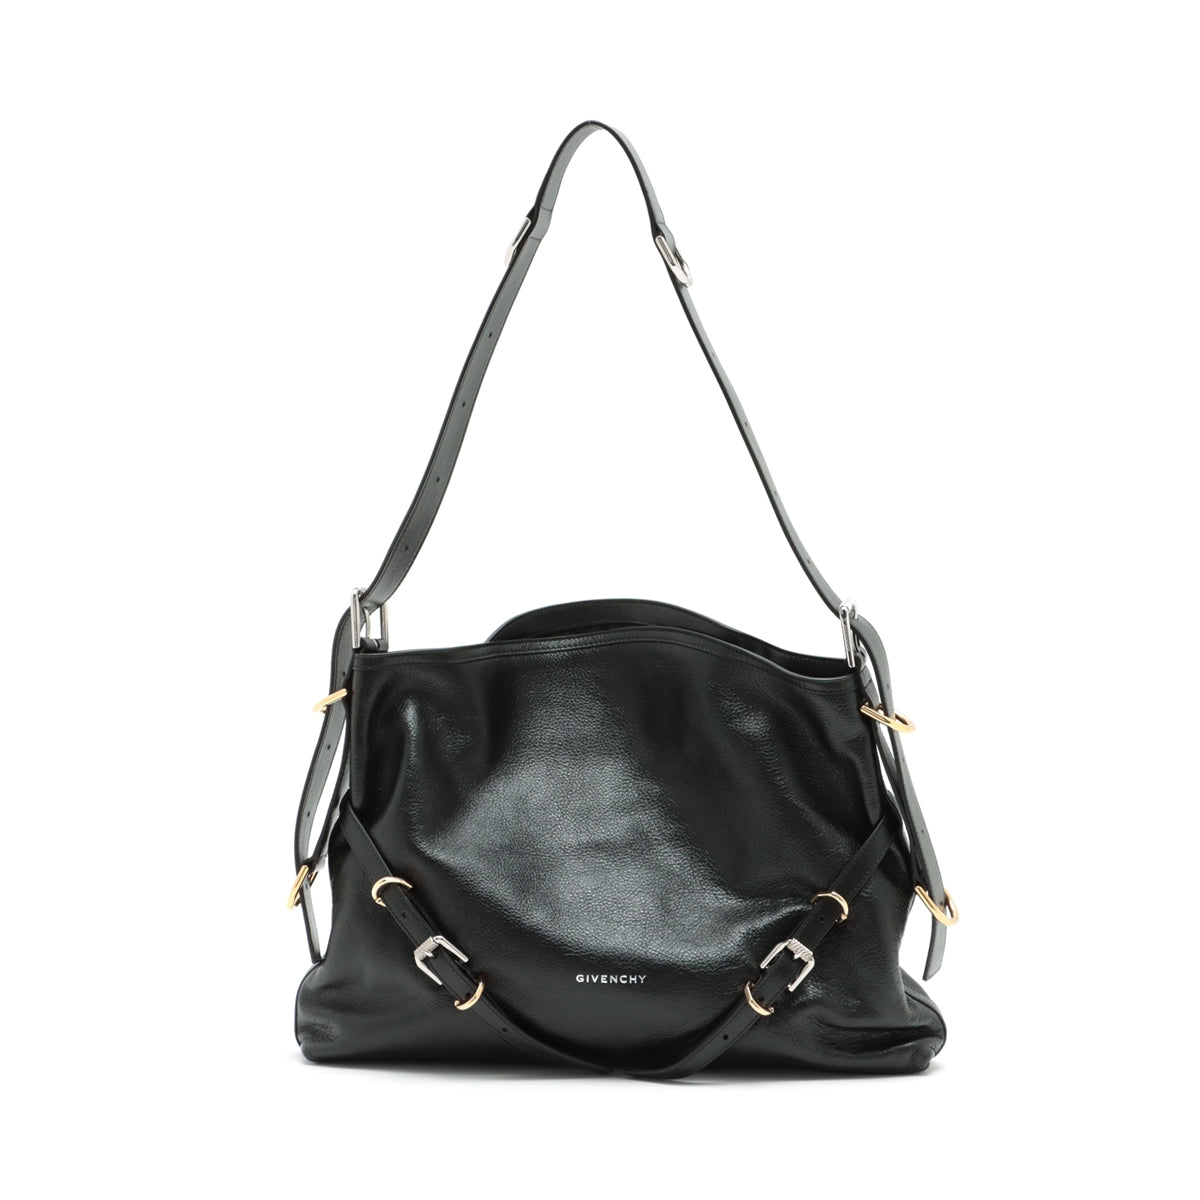 Givenchy Leather Shoulder bag Black